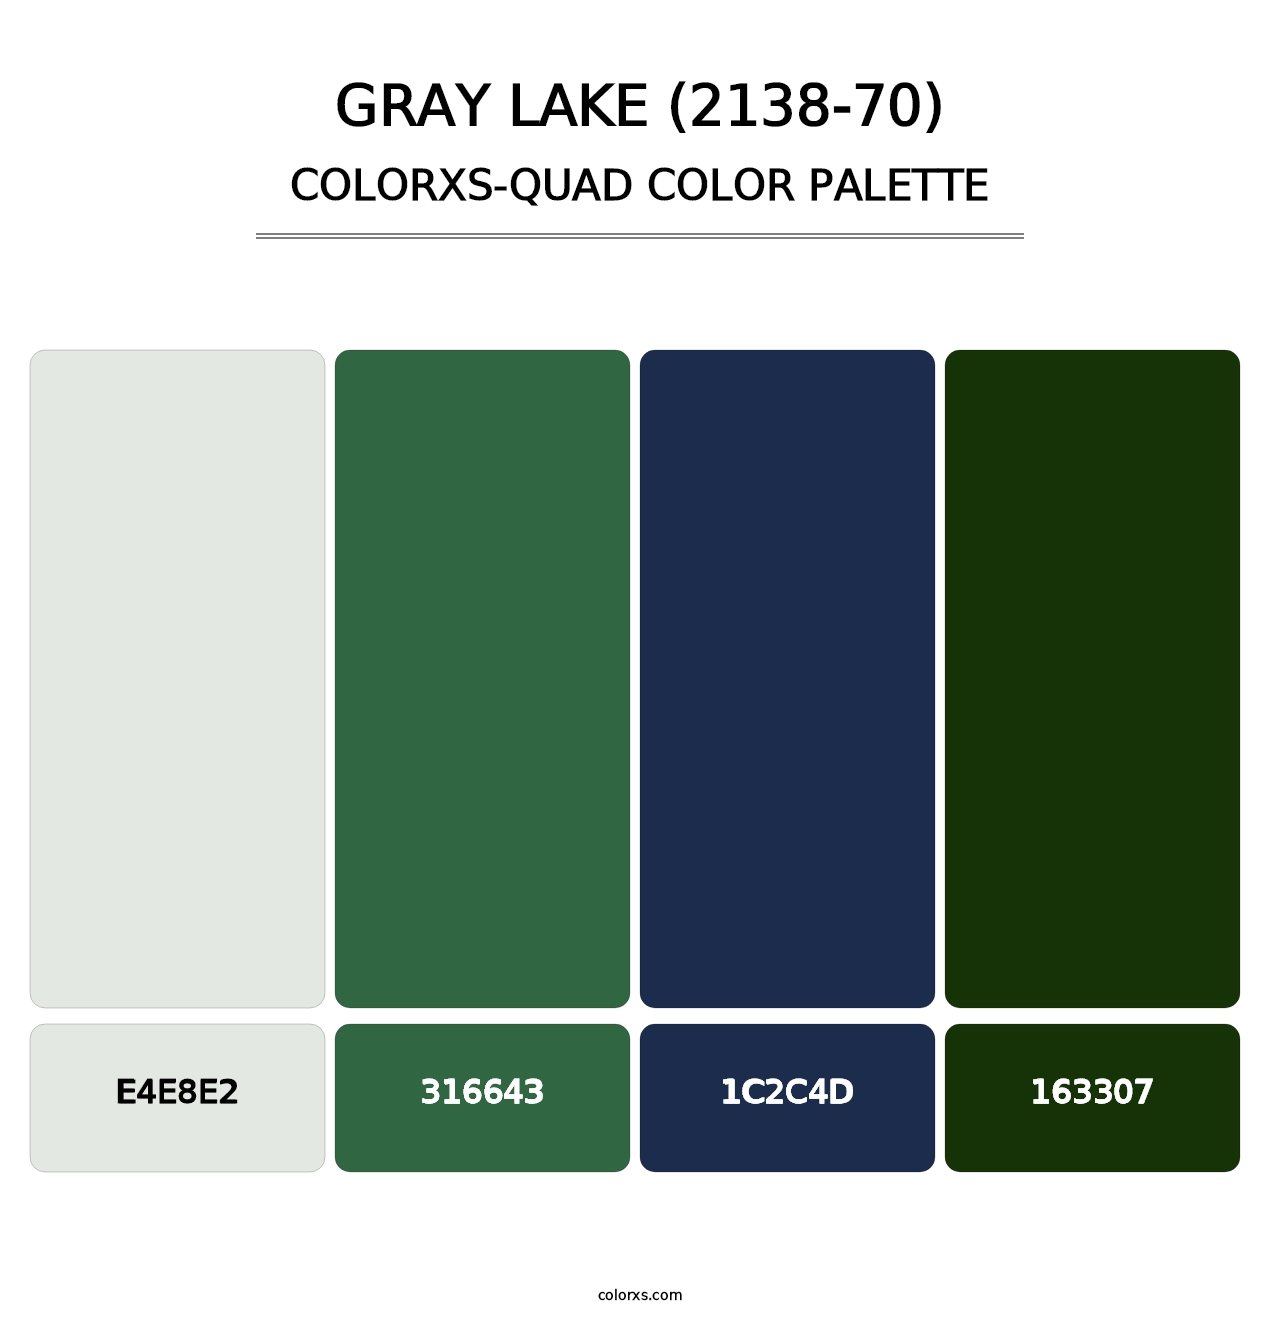 Gray Lake (2138-70) - Colorxs Quad Palette